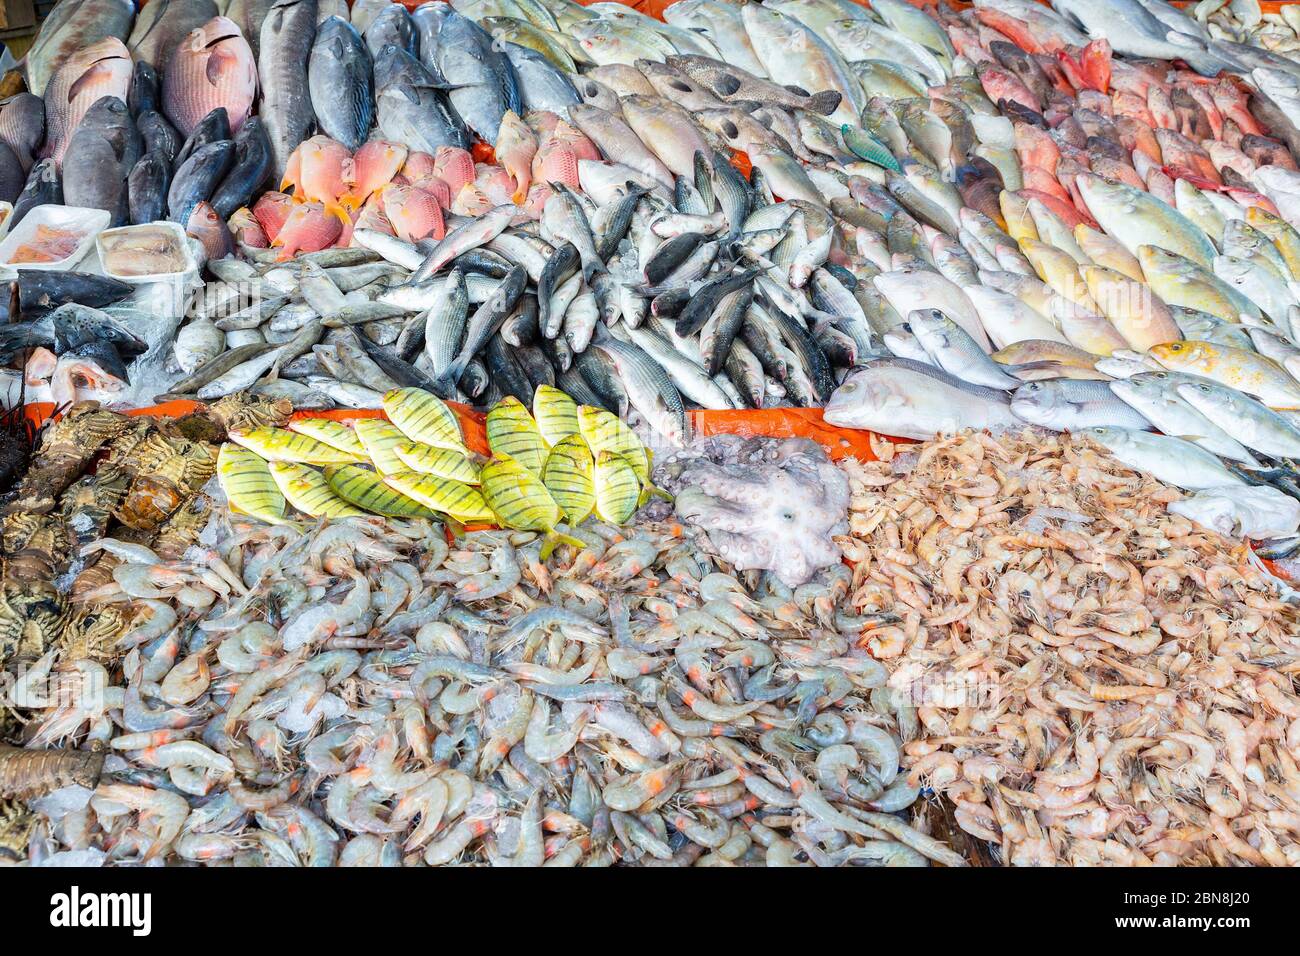 Tas de nombreux poissons d'eau salée vendus sur le marché Banque D'Images